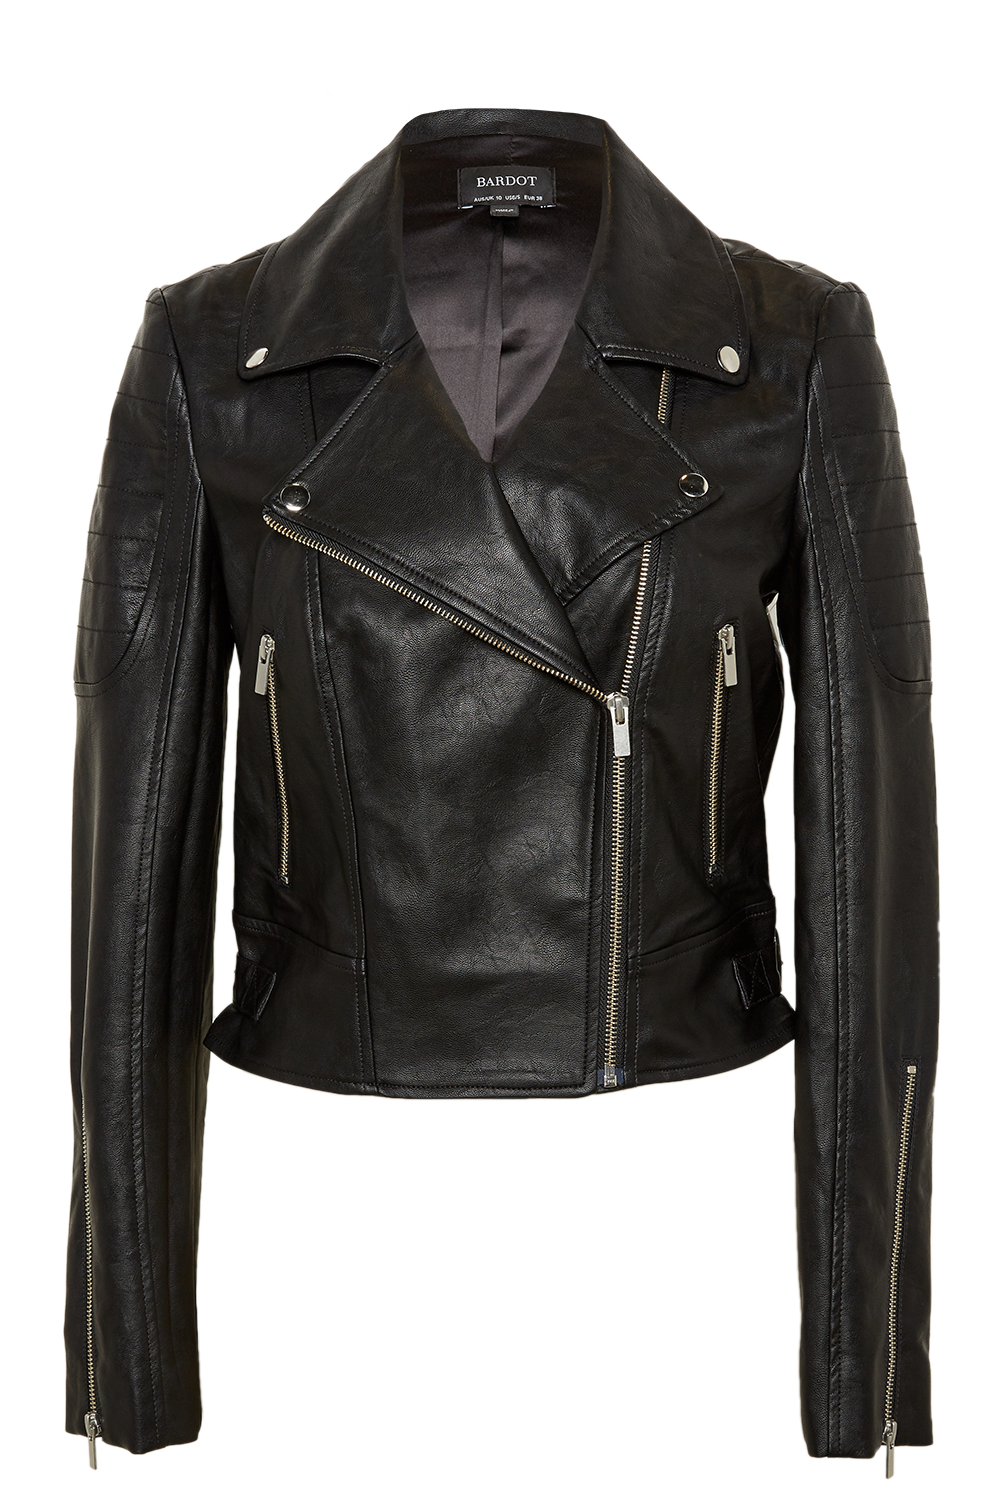 Black Leather Jacket Transparent Images